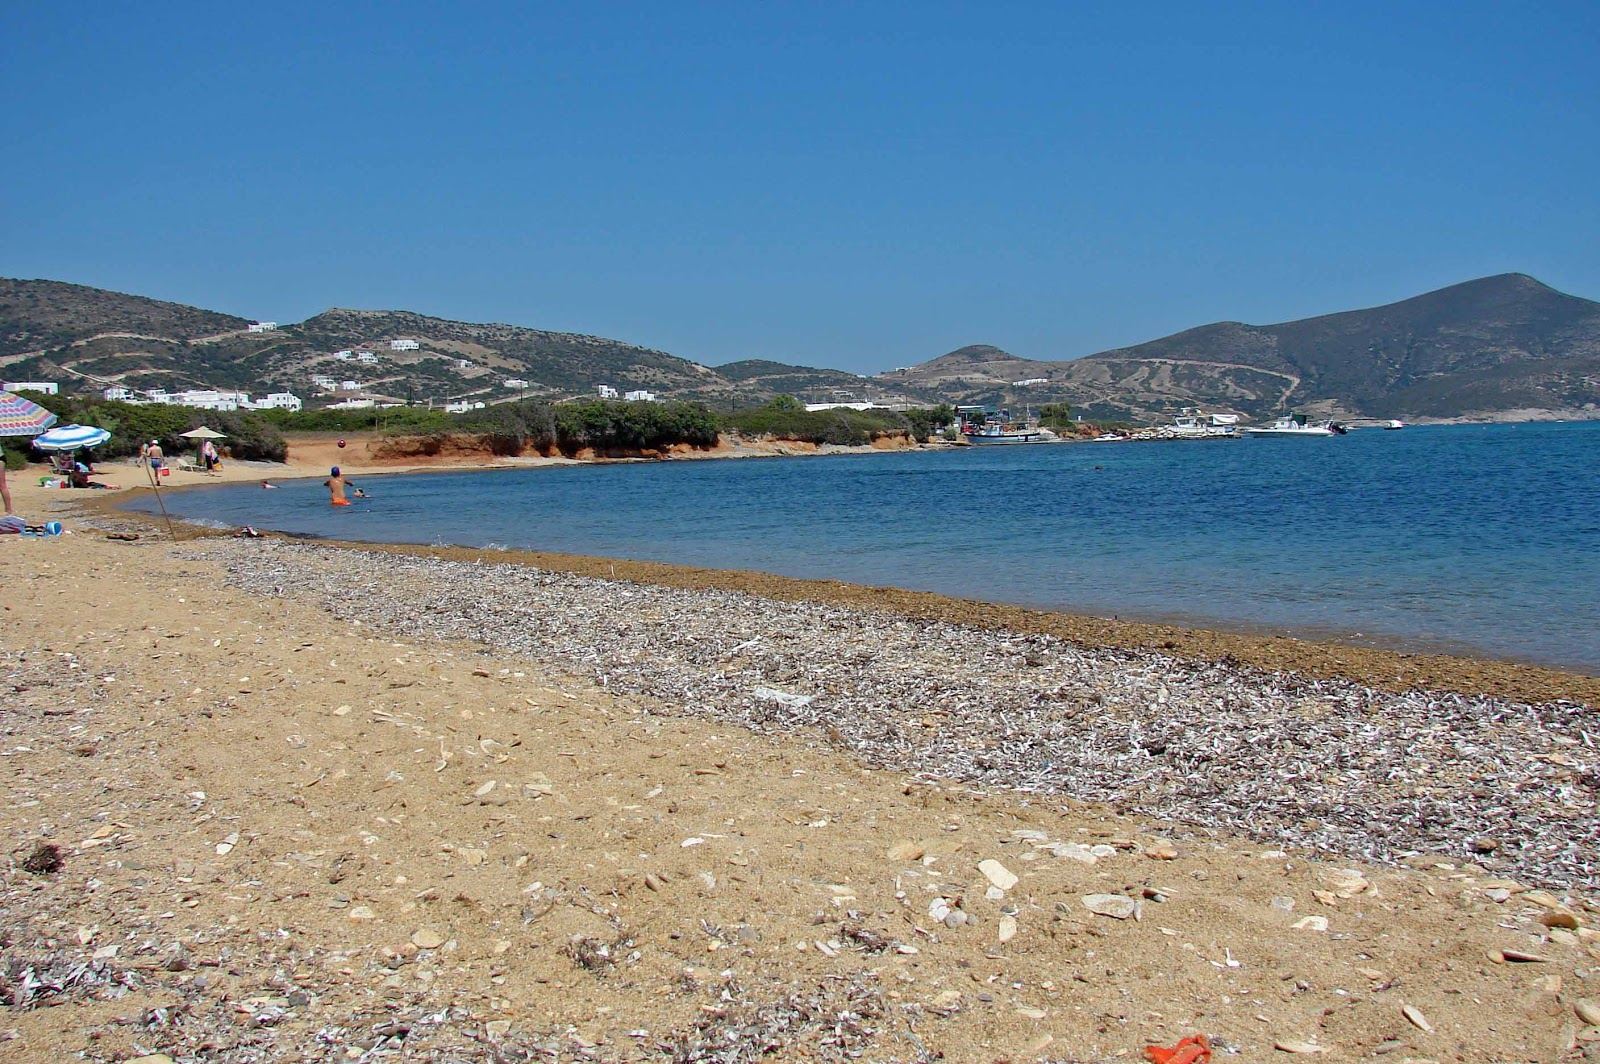 Agios Georgios beach'in fotoğrafı kahverengi kum yüzey ile